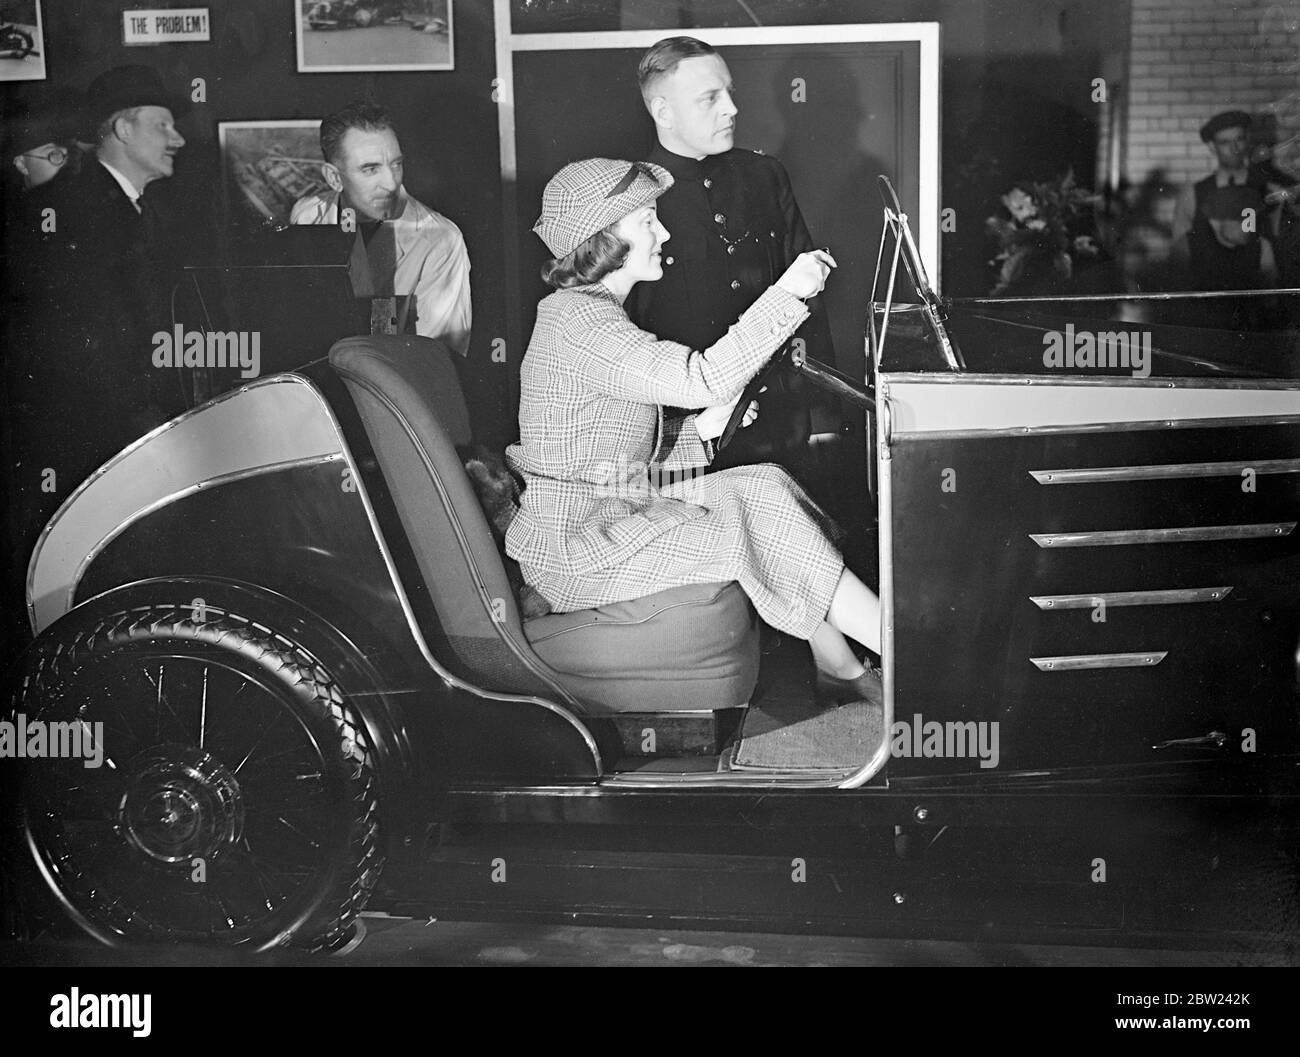 Judy Shirley, la chanteuse radio, au volant de la voiture d'essai sur le stand de police au Motor Show qui a ouvert à Earls court, Olympia, Londres. La commande de cette voiture par le conducteur est indiquée sur le tableau des indicateurs à l'avant du véhicule. 13 octobre 1938 Banque D'Images